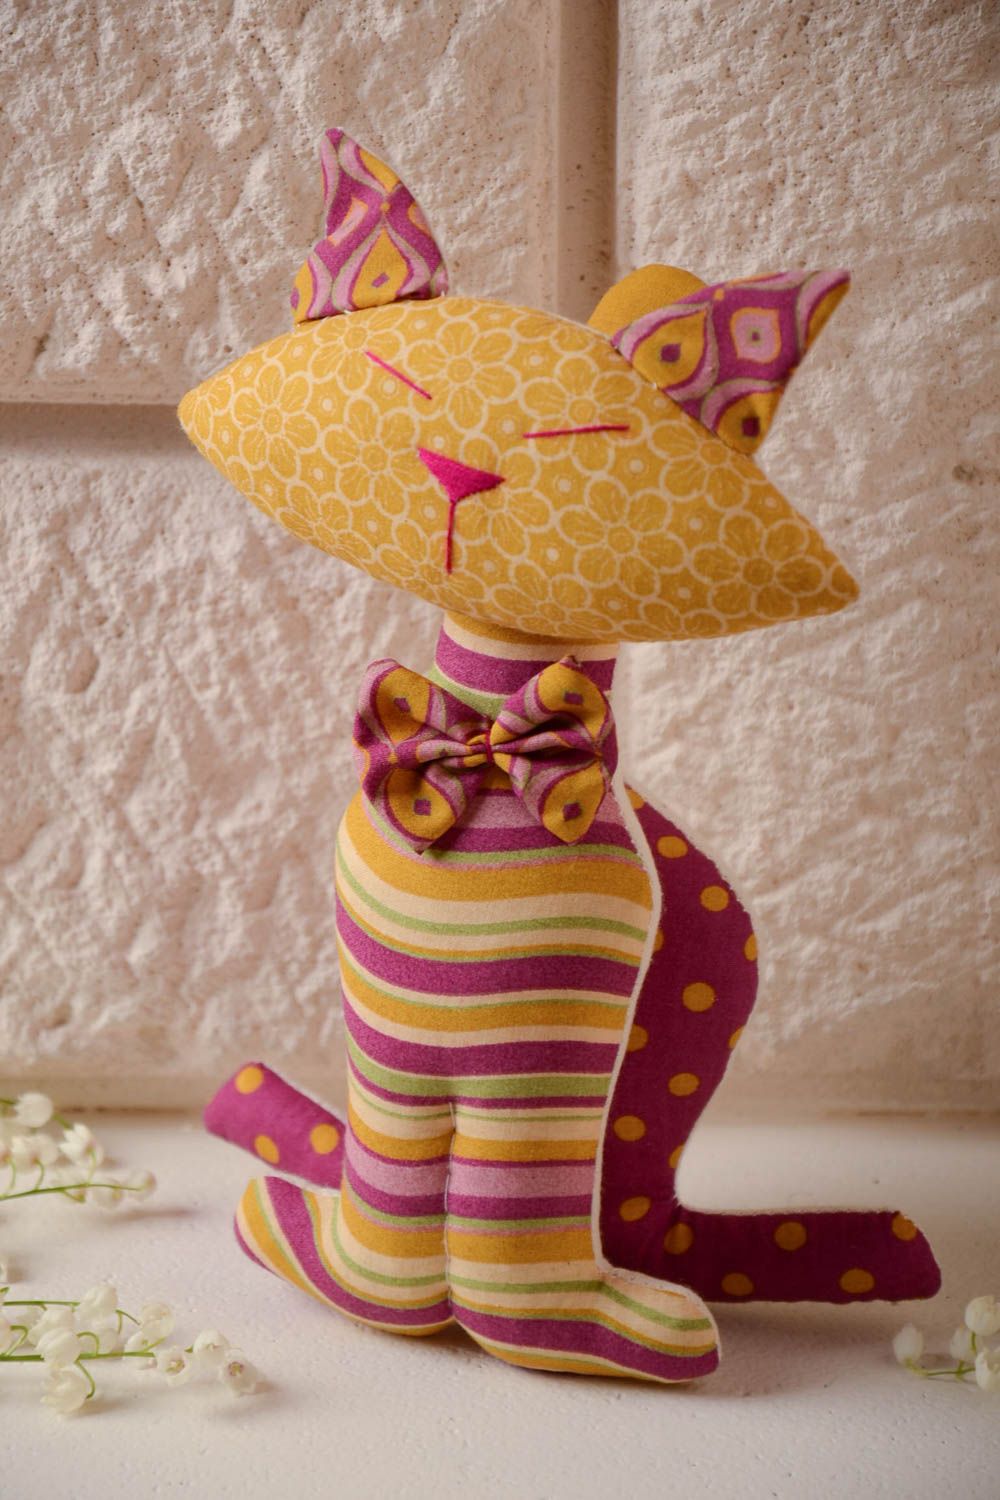 Дизайнерская игрушка из хлопка ручной работы мягкая в виде кота красивая оригинальная фото 1